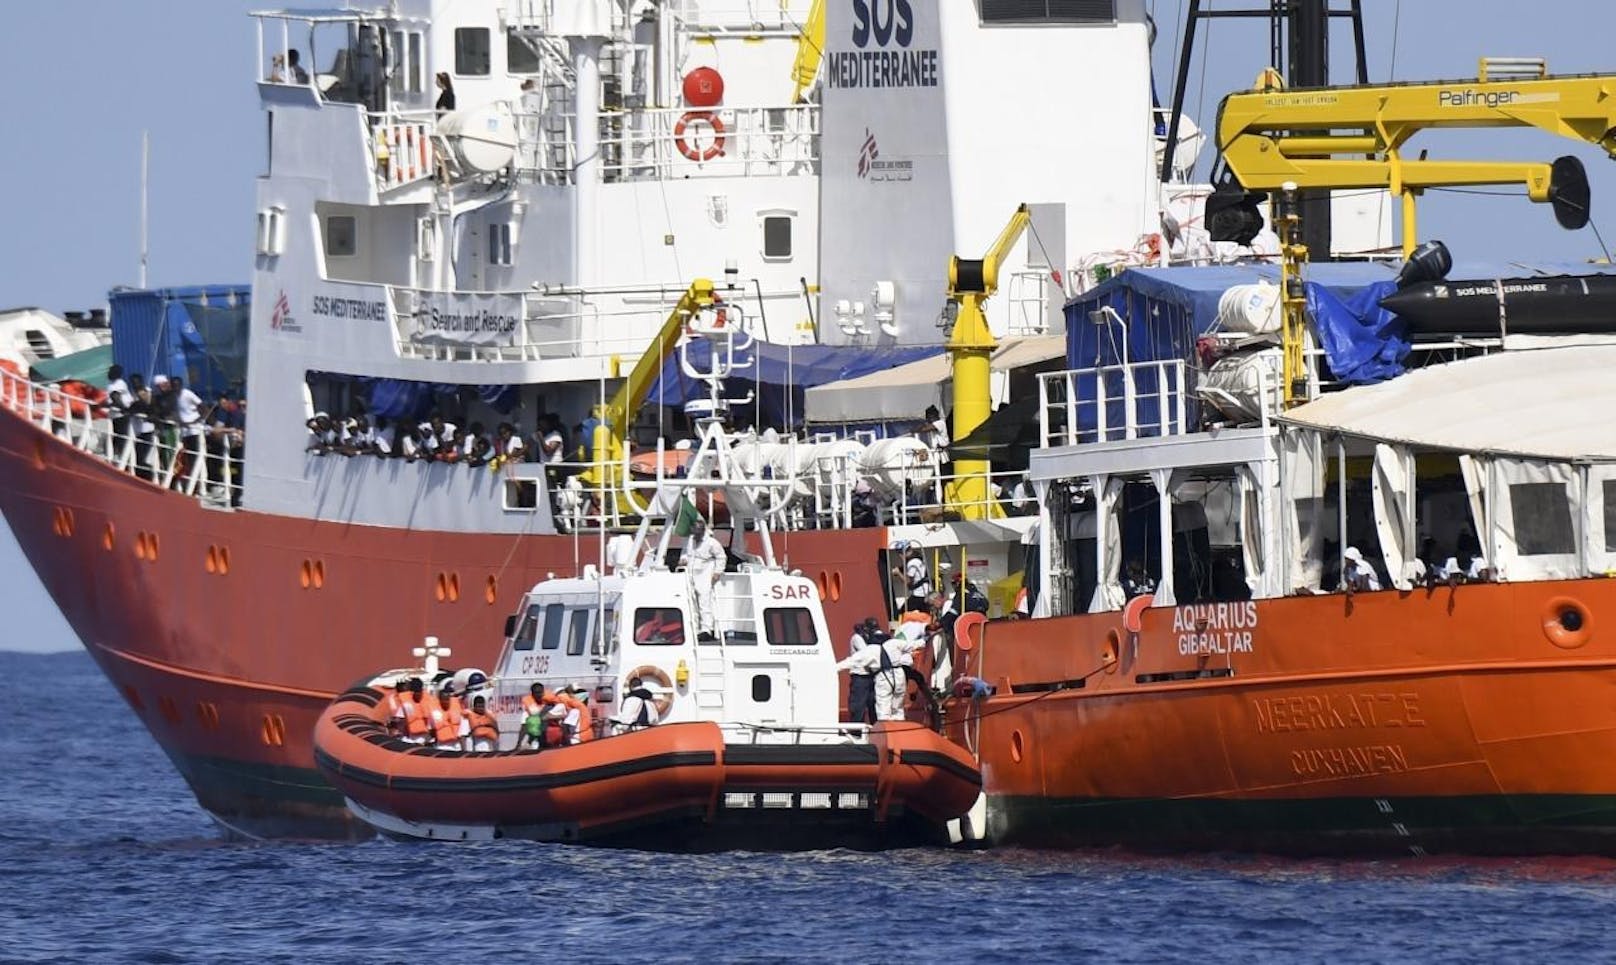 Begleitet wird es dabei von Schiffen der italienischen Marine und Küstenwache, auf welchen ein Großteil der Passagiere temporär Zuflucht gesucht haben.